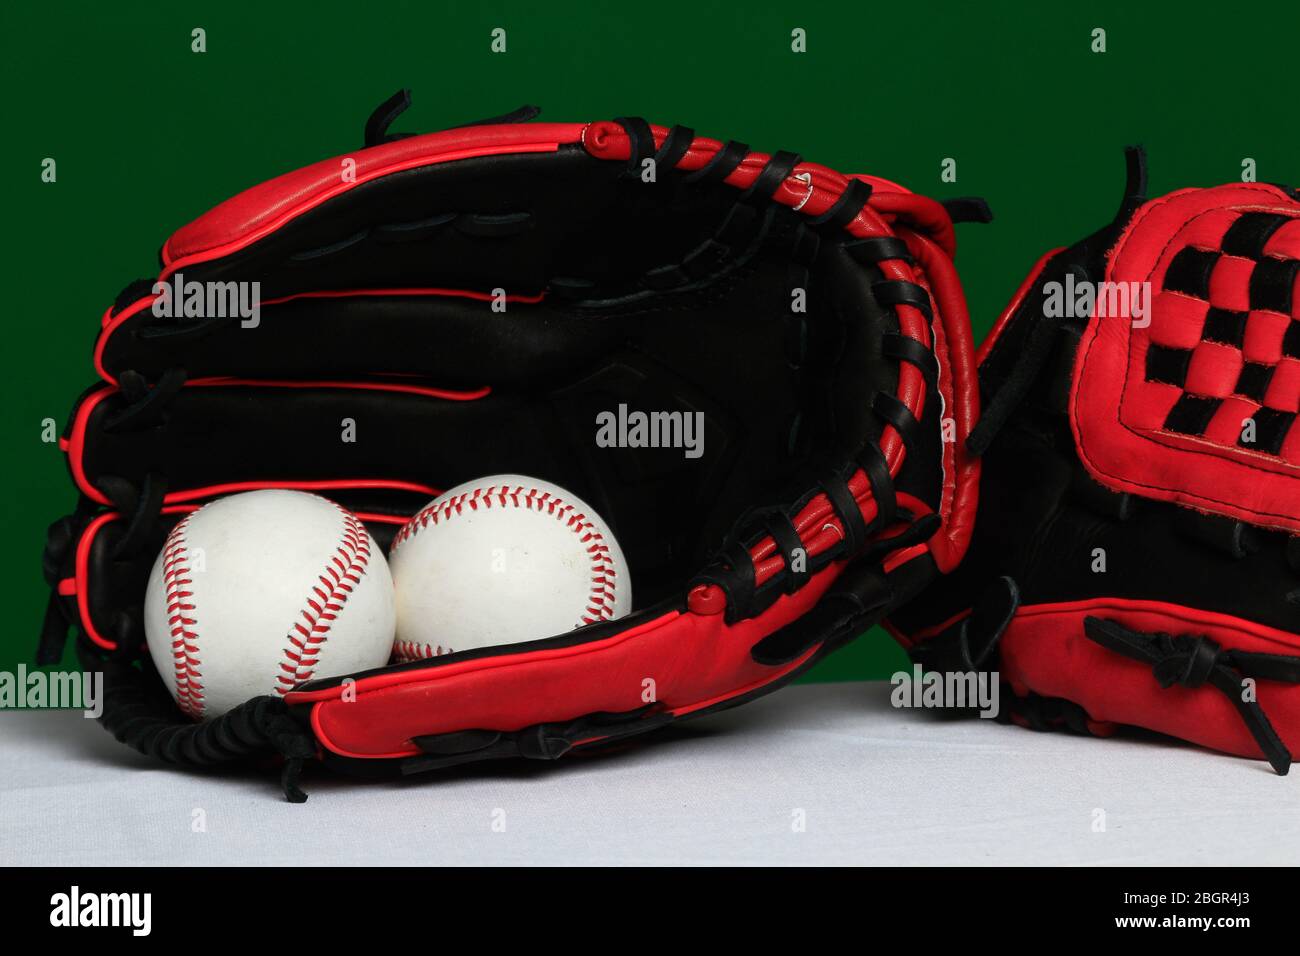 Accessori del besbol immagini e fotografie stock ad alta risoluzione - Alamy